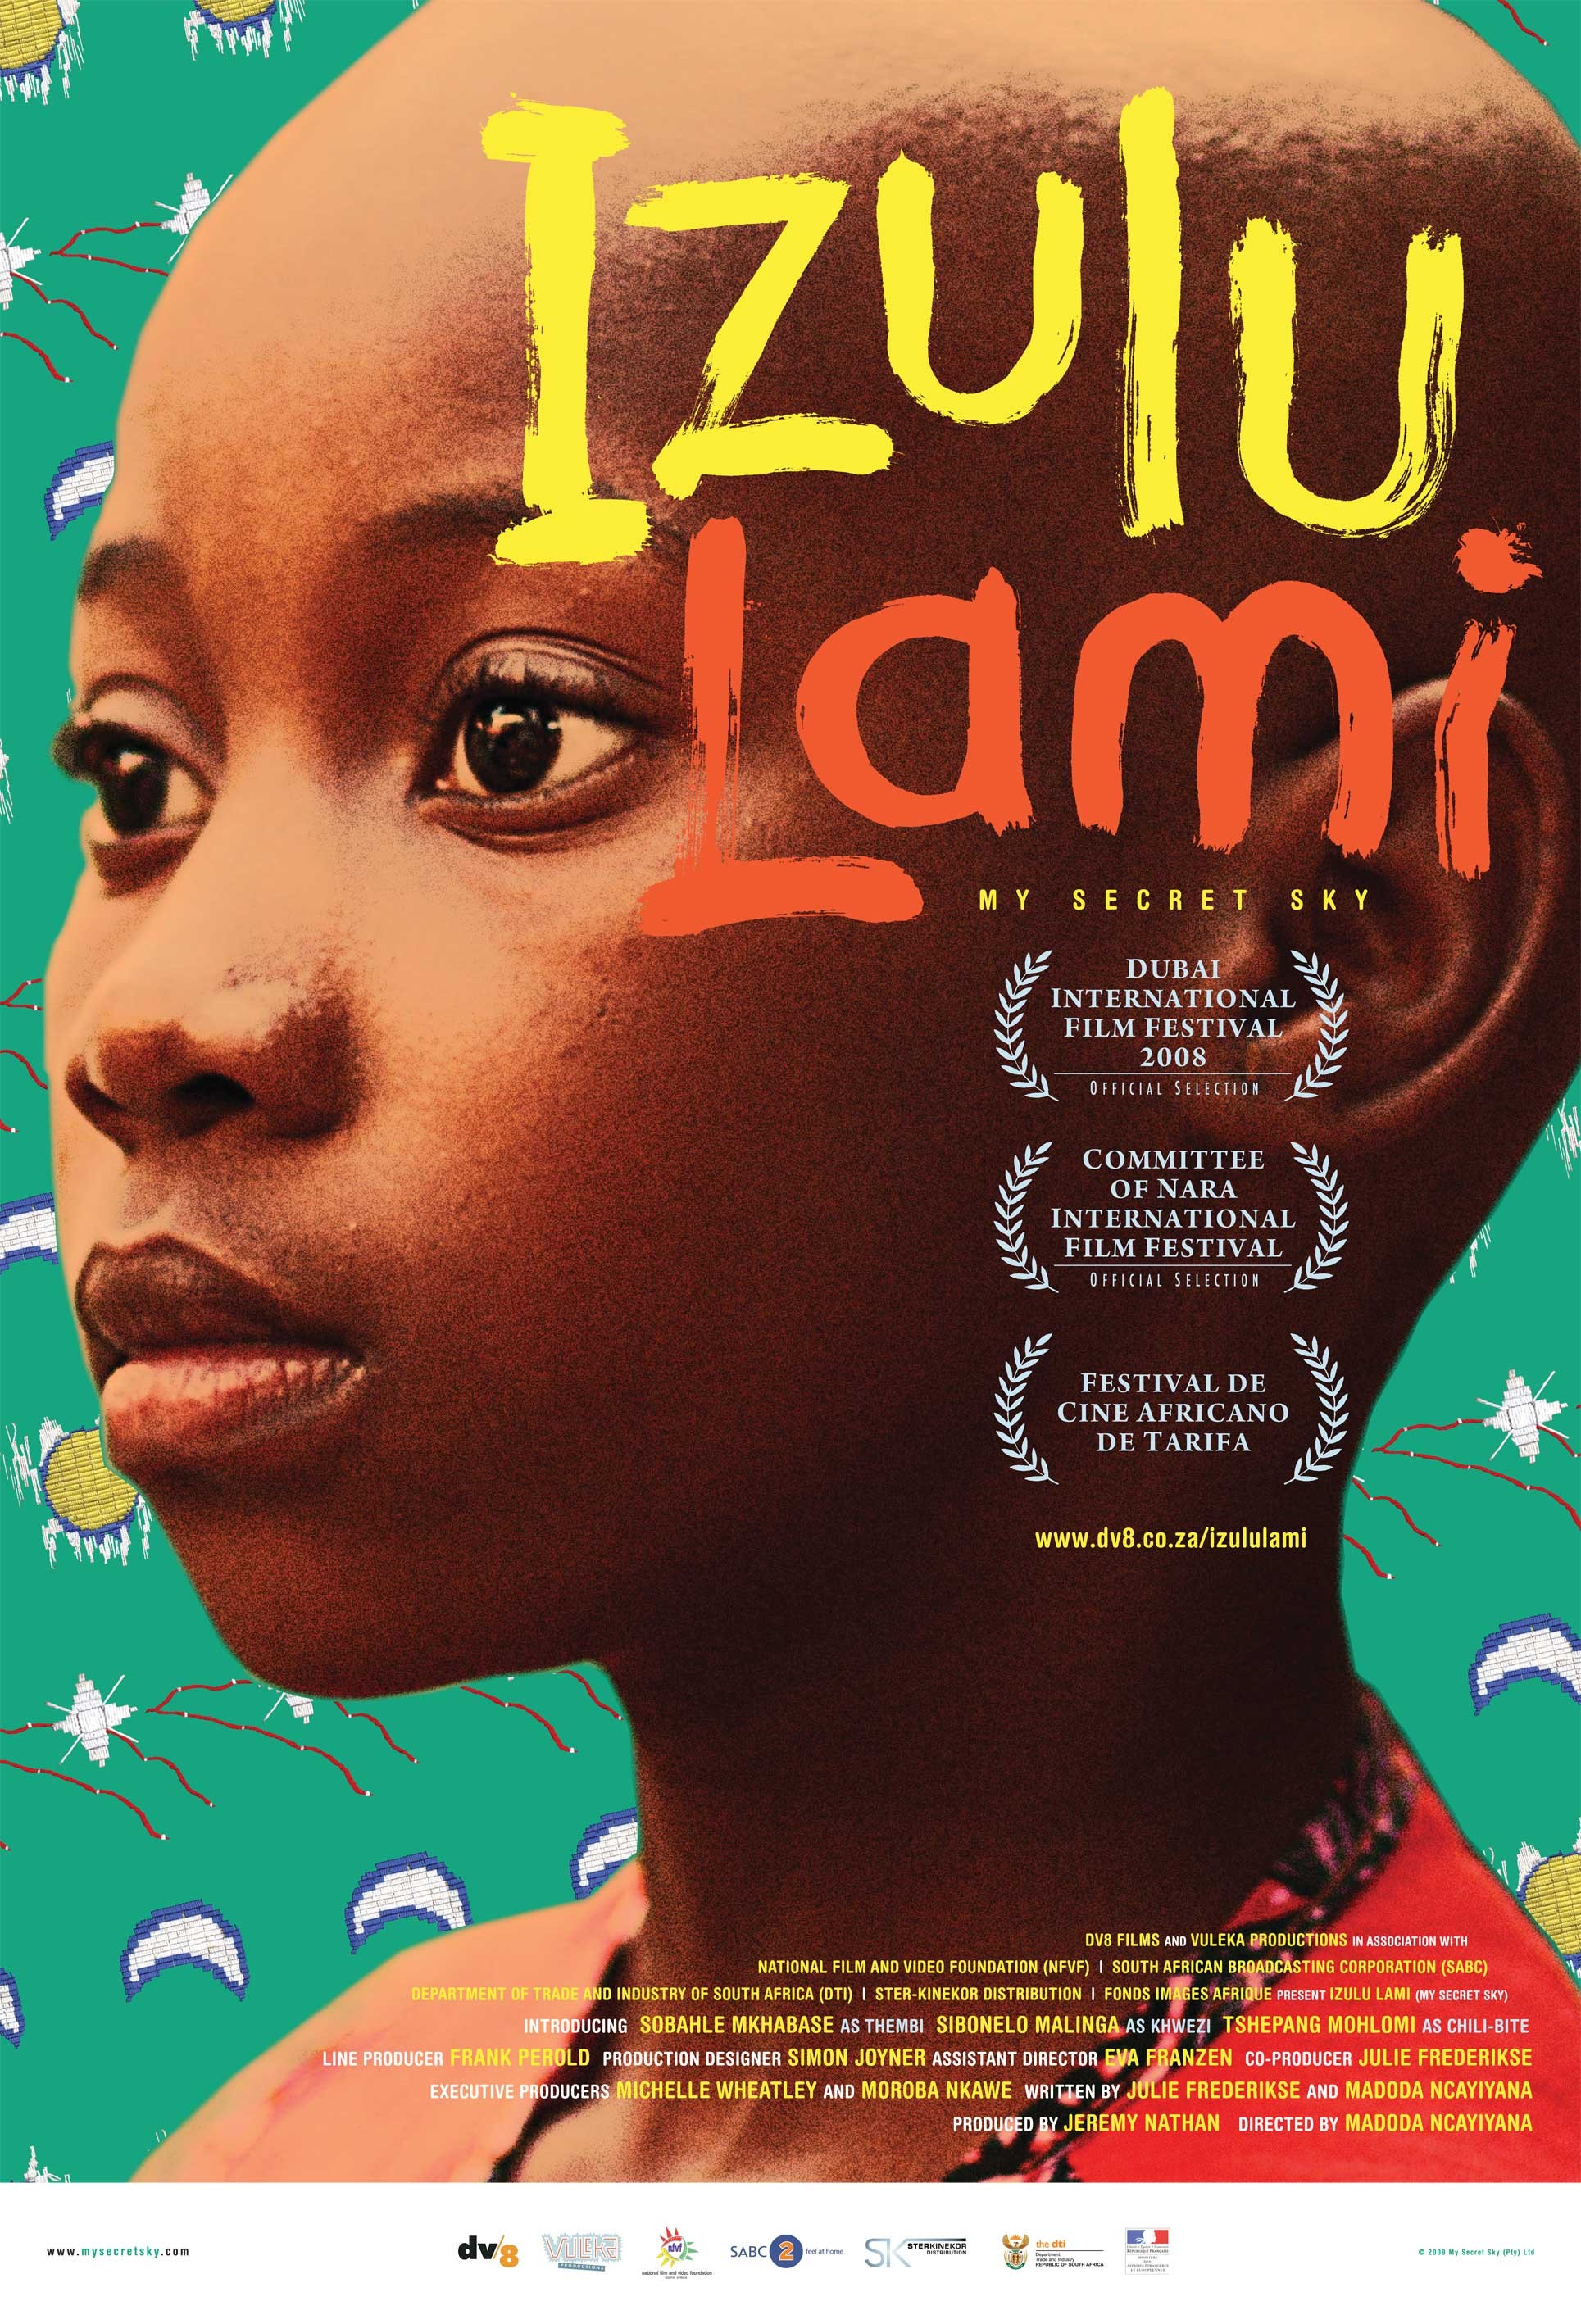 Mega Sized Movie Poster Image for Izulu lami 